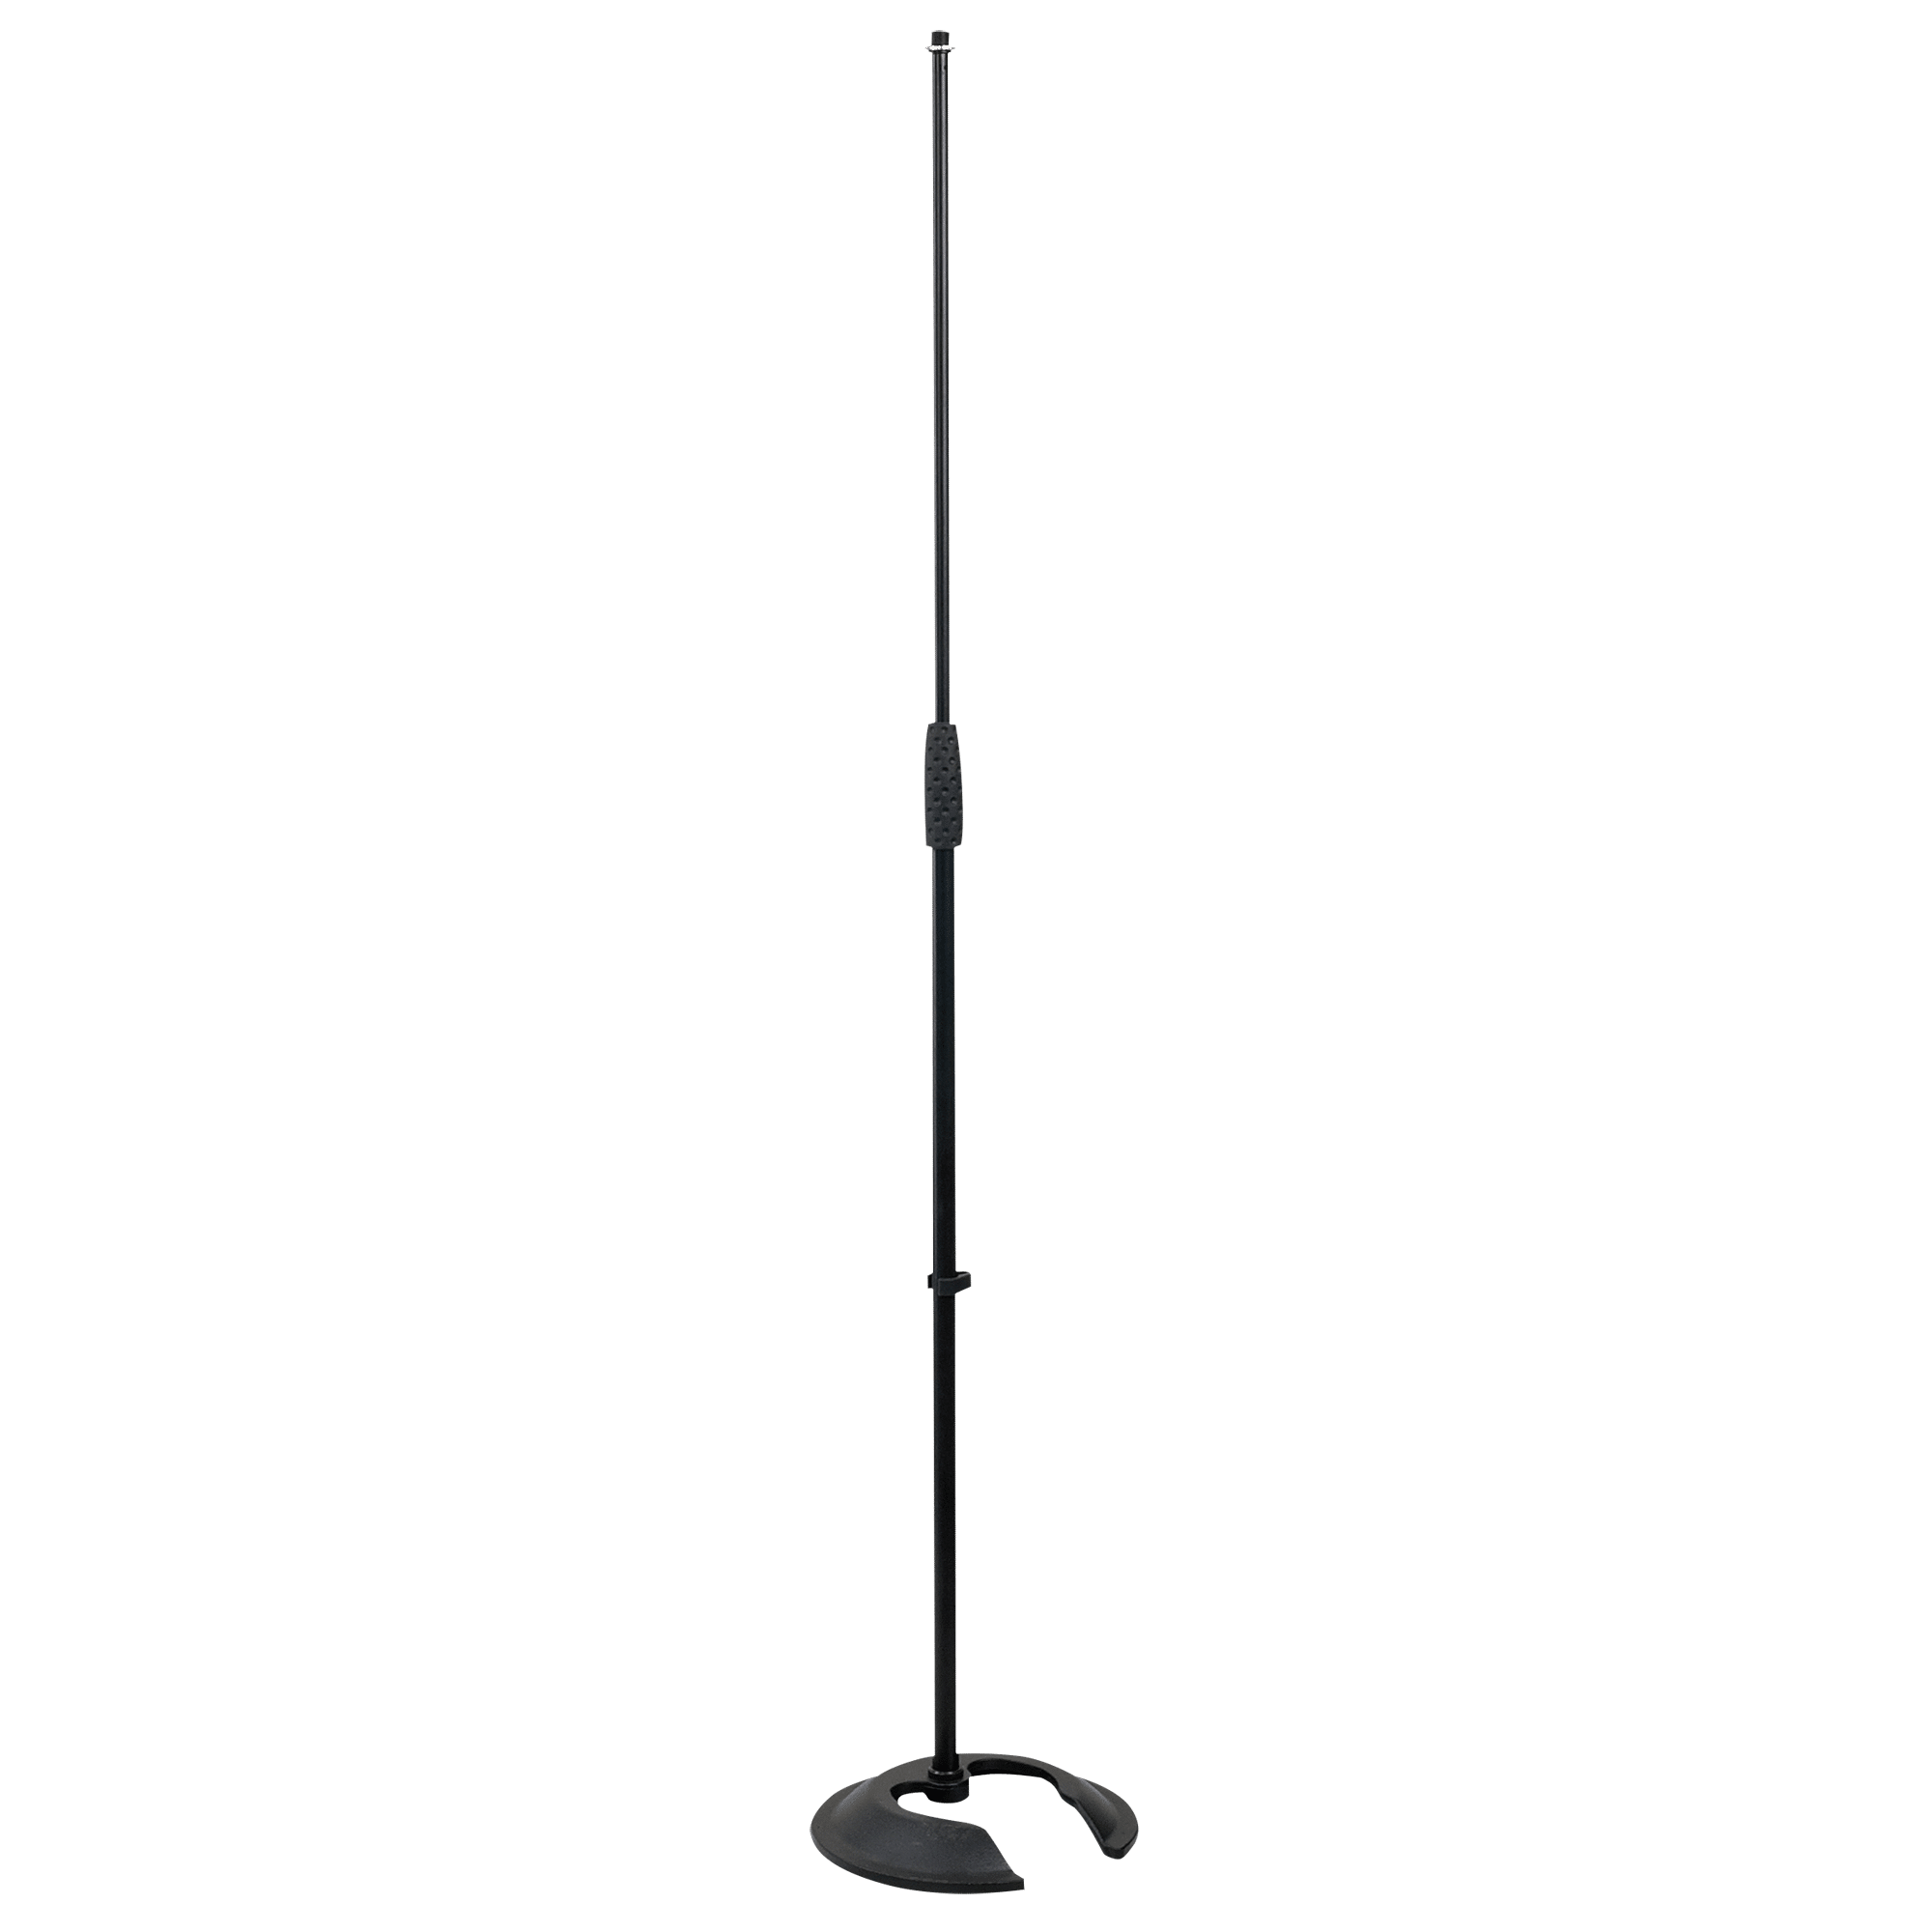 Microphone Pole - Onlinediscowinkel.nl